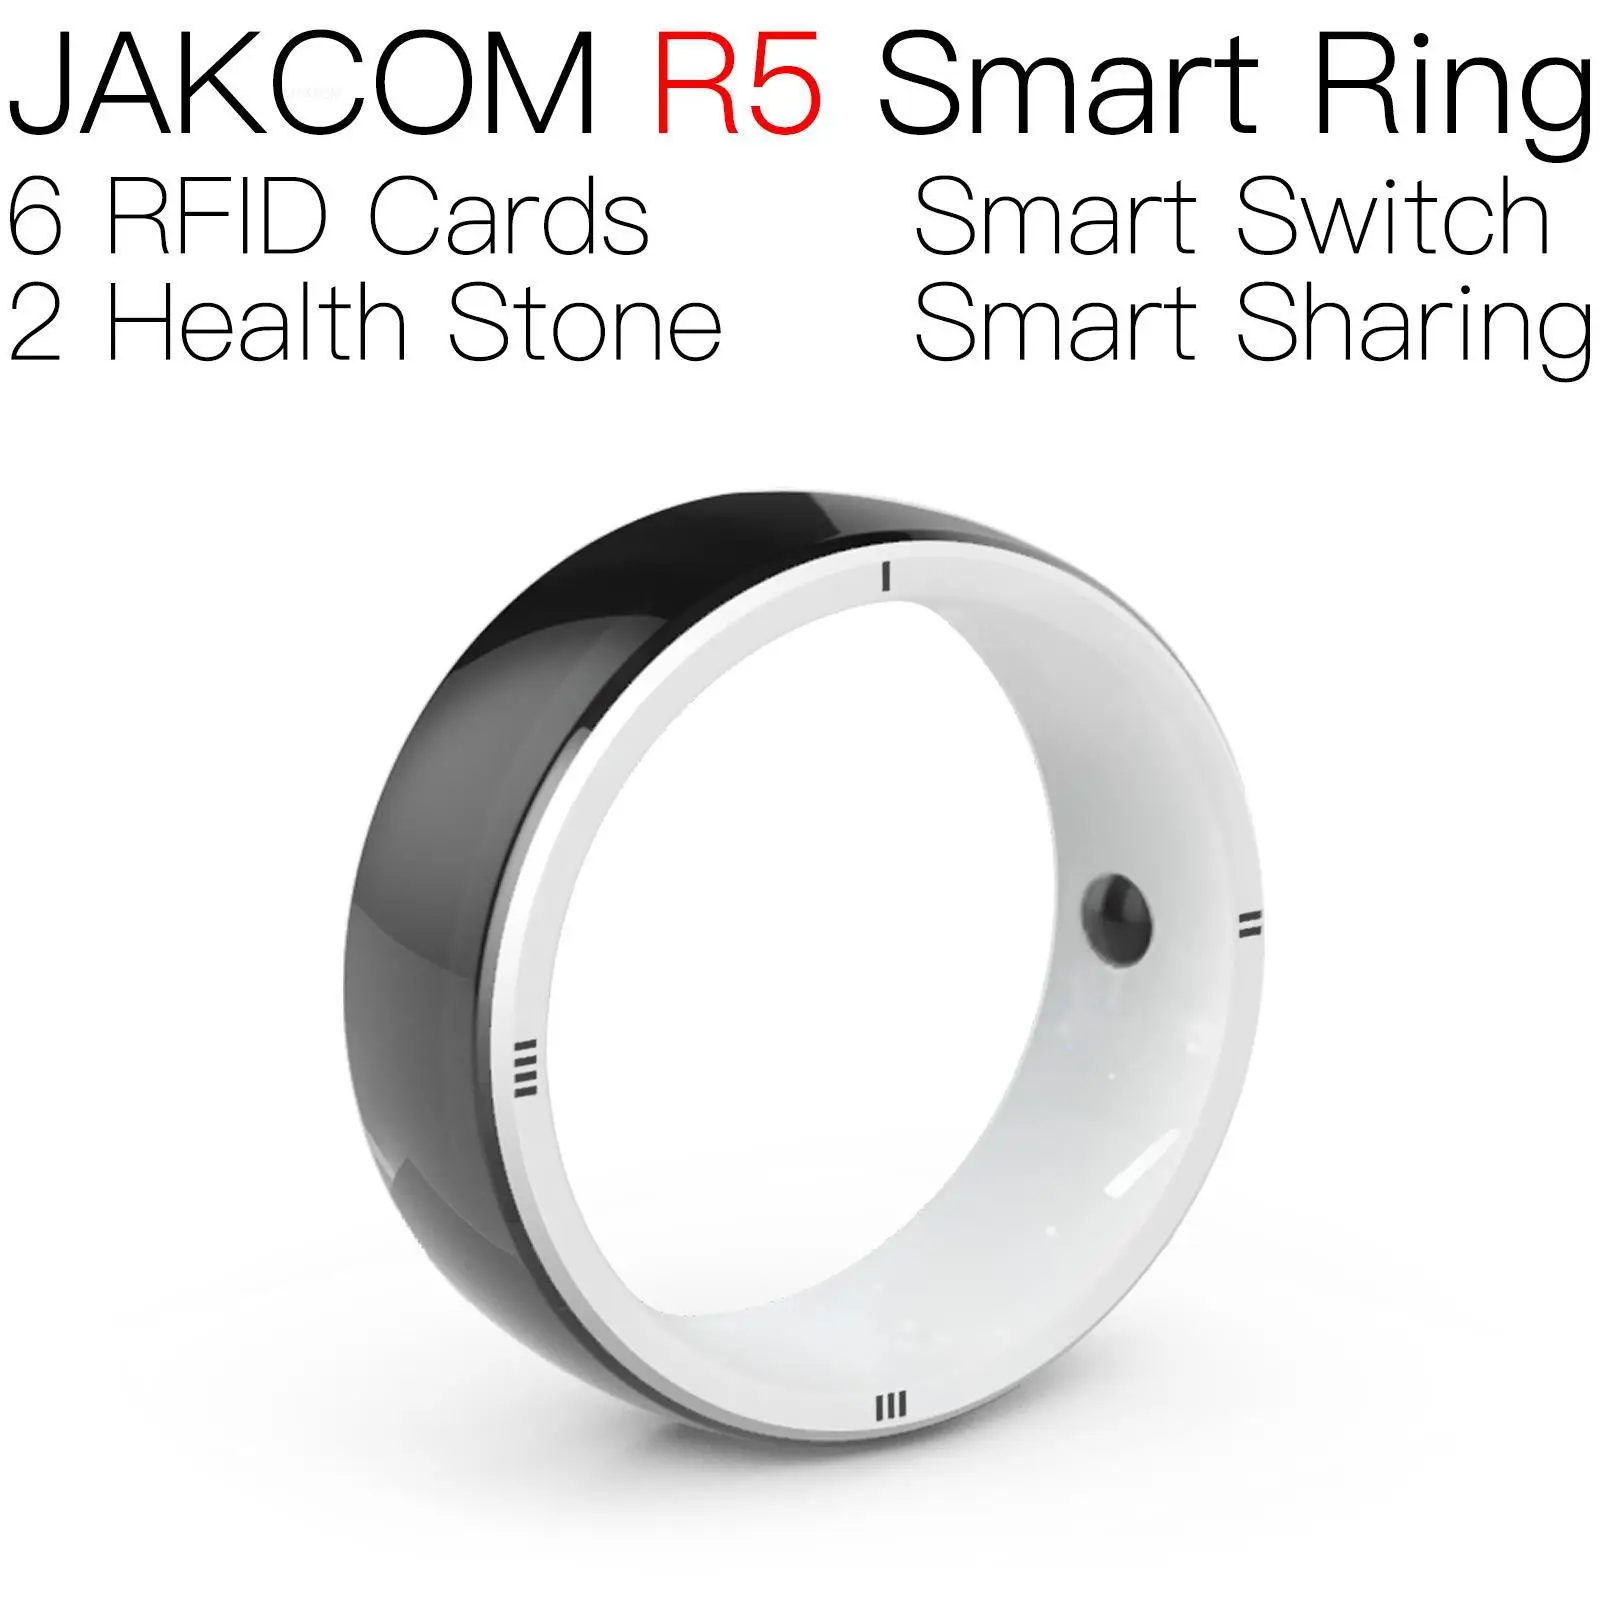 

Умное кольцо JAKCOM R5, красивое, чем отслеживание rfid, 9662 дюйма, uhf, стандартный привод, французский ключ, 100 шт., наклейка rifd 125 кгц для животных, домашних животных